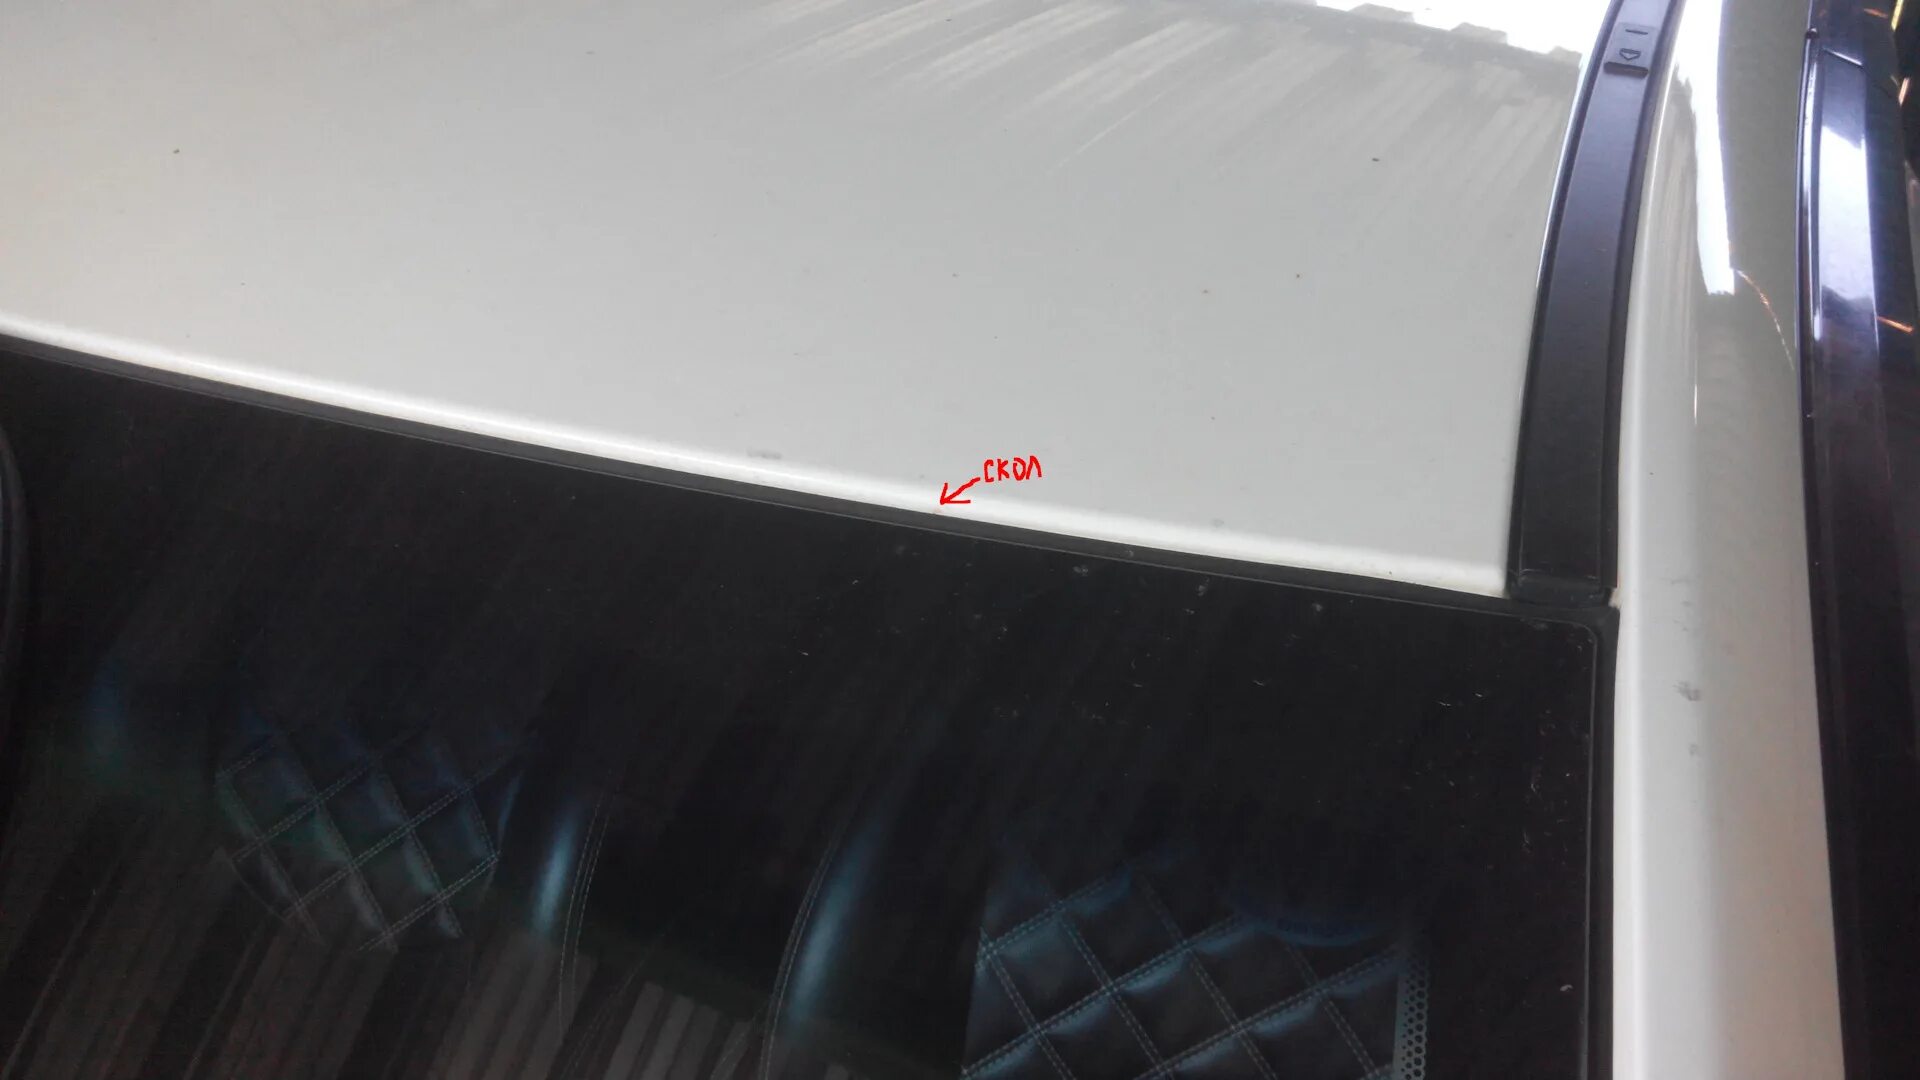 Гранта рыжики. Рыжики на передних стойках лобового стекла. Подкраска рыжиков над лобовым стеклом Mazda CX 5. Рыжики над лобовым стеклом ВАЗ Приора. Рыжики над лобовым стеклом Киа Оптима.